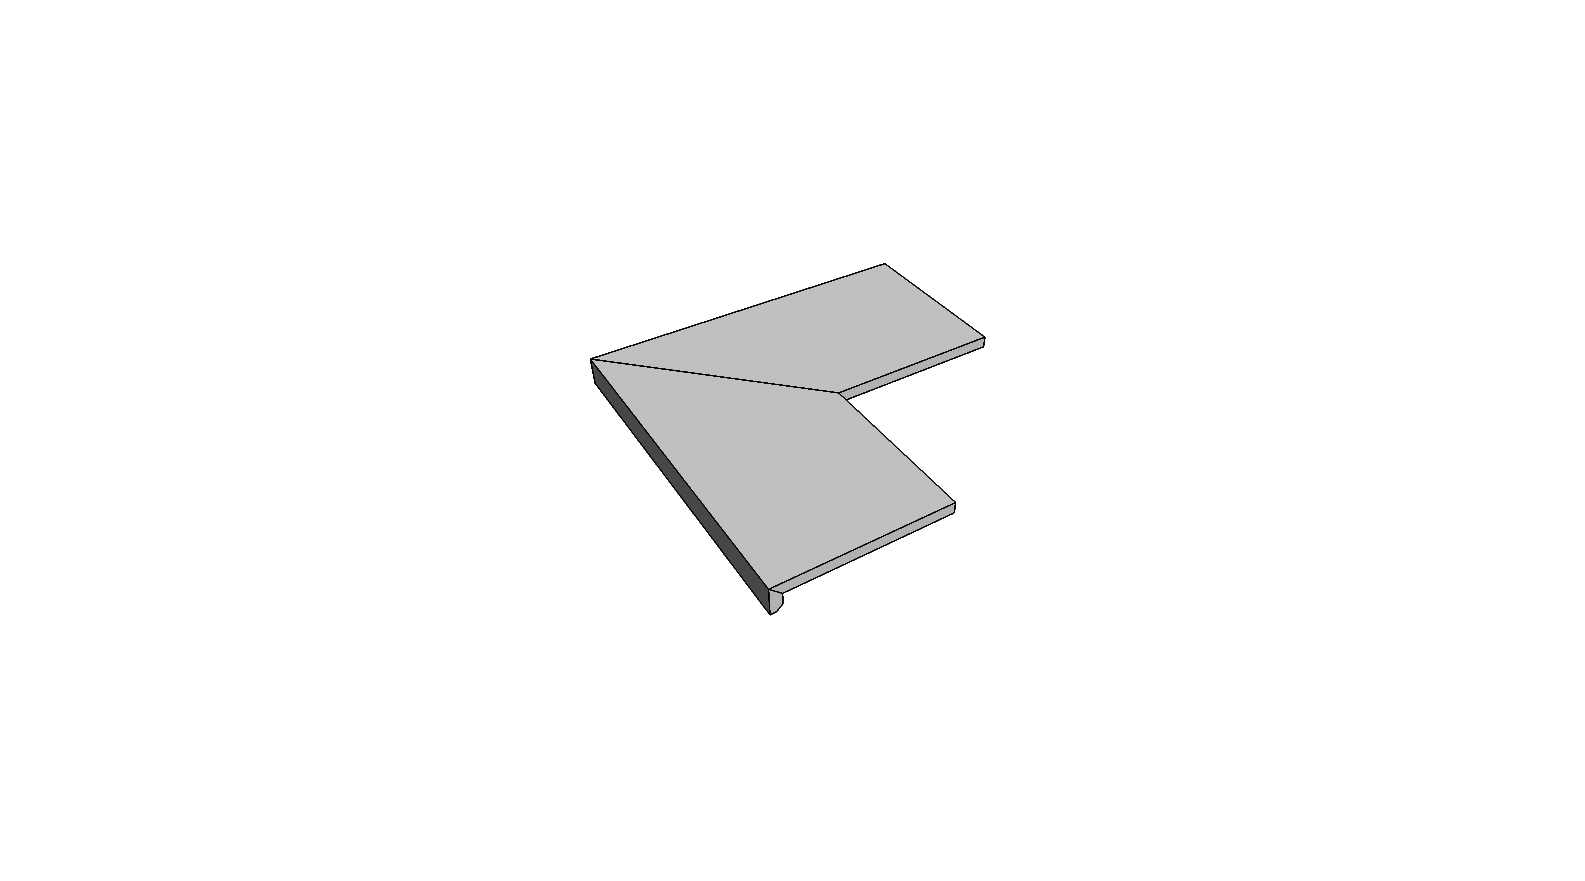 L-rand randtegel aflopend gelijmd volledige buitenhoek (2 stuks) <span style="white-space:nowrap;">30x120 cm</span>   <span style="white-space:nowrap;">ép. 20mm</span>